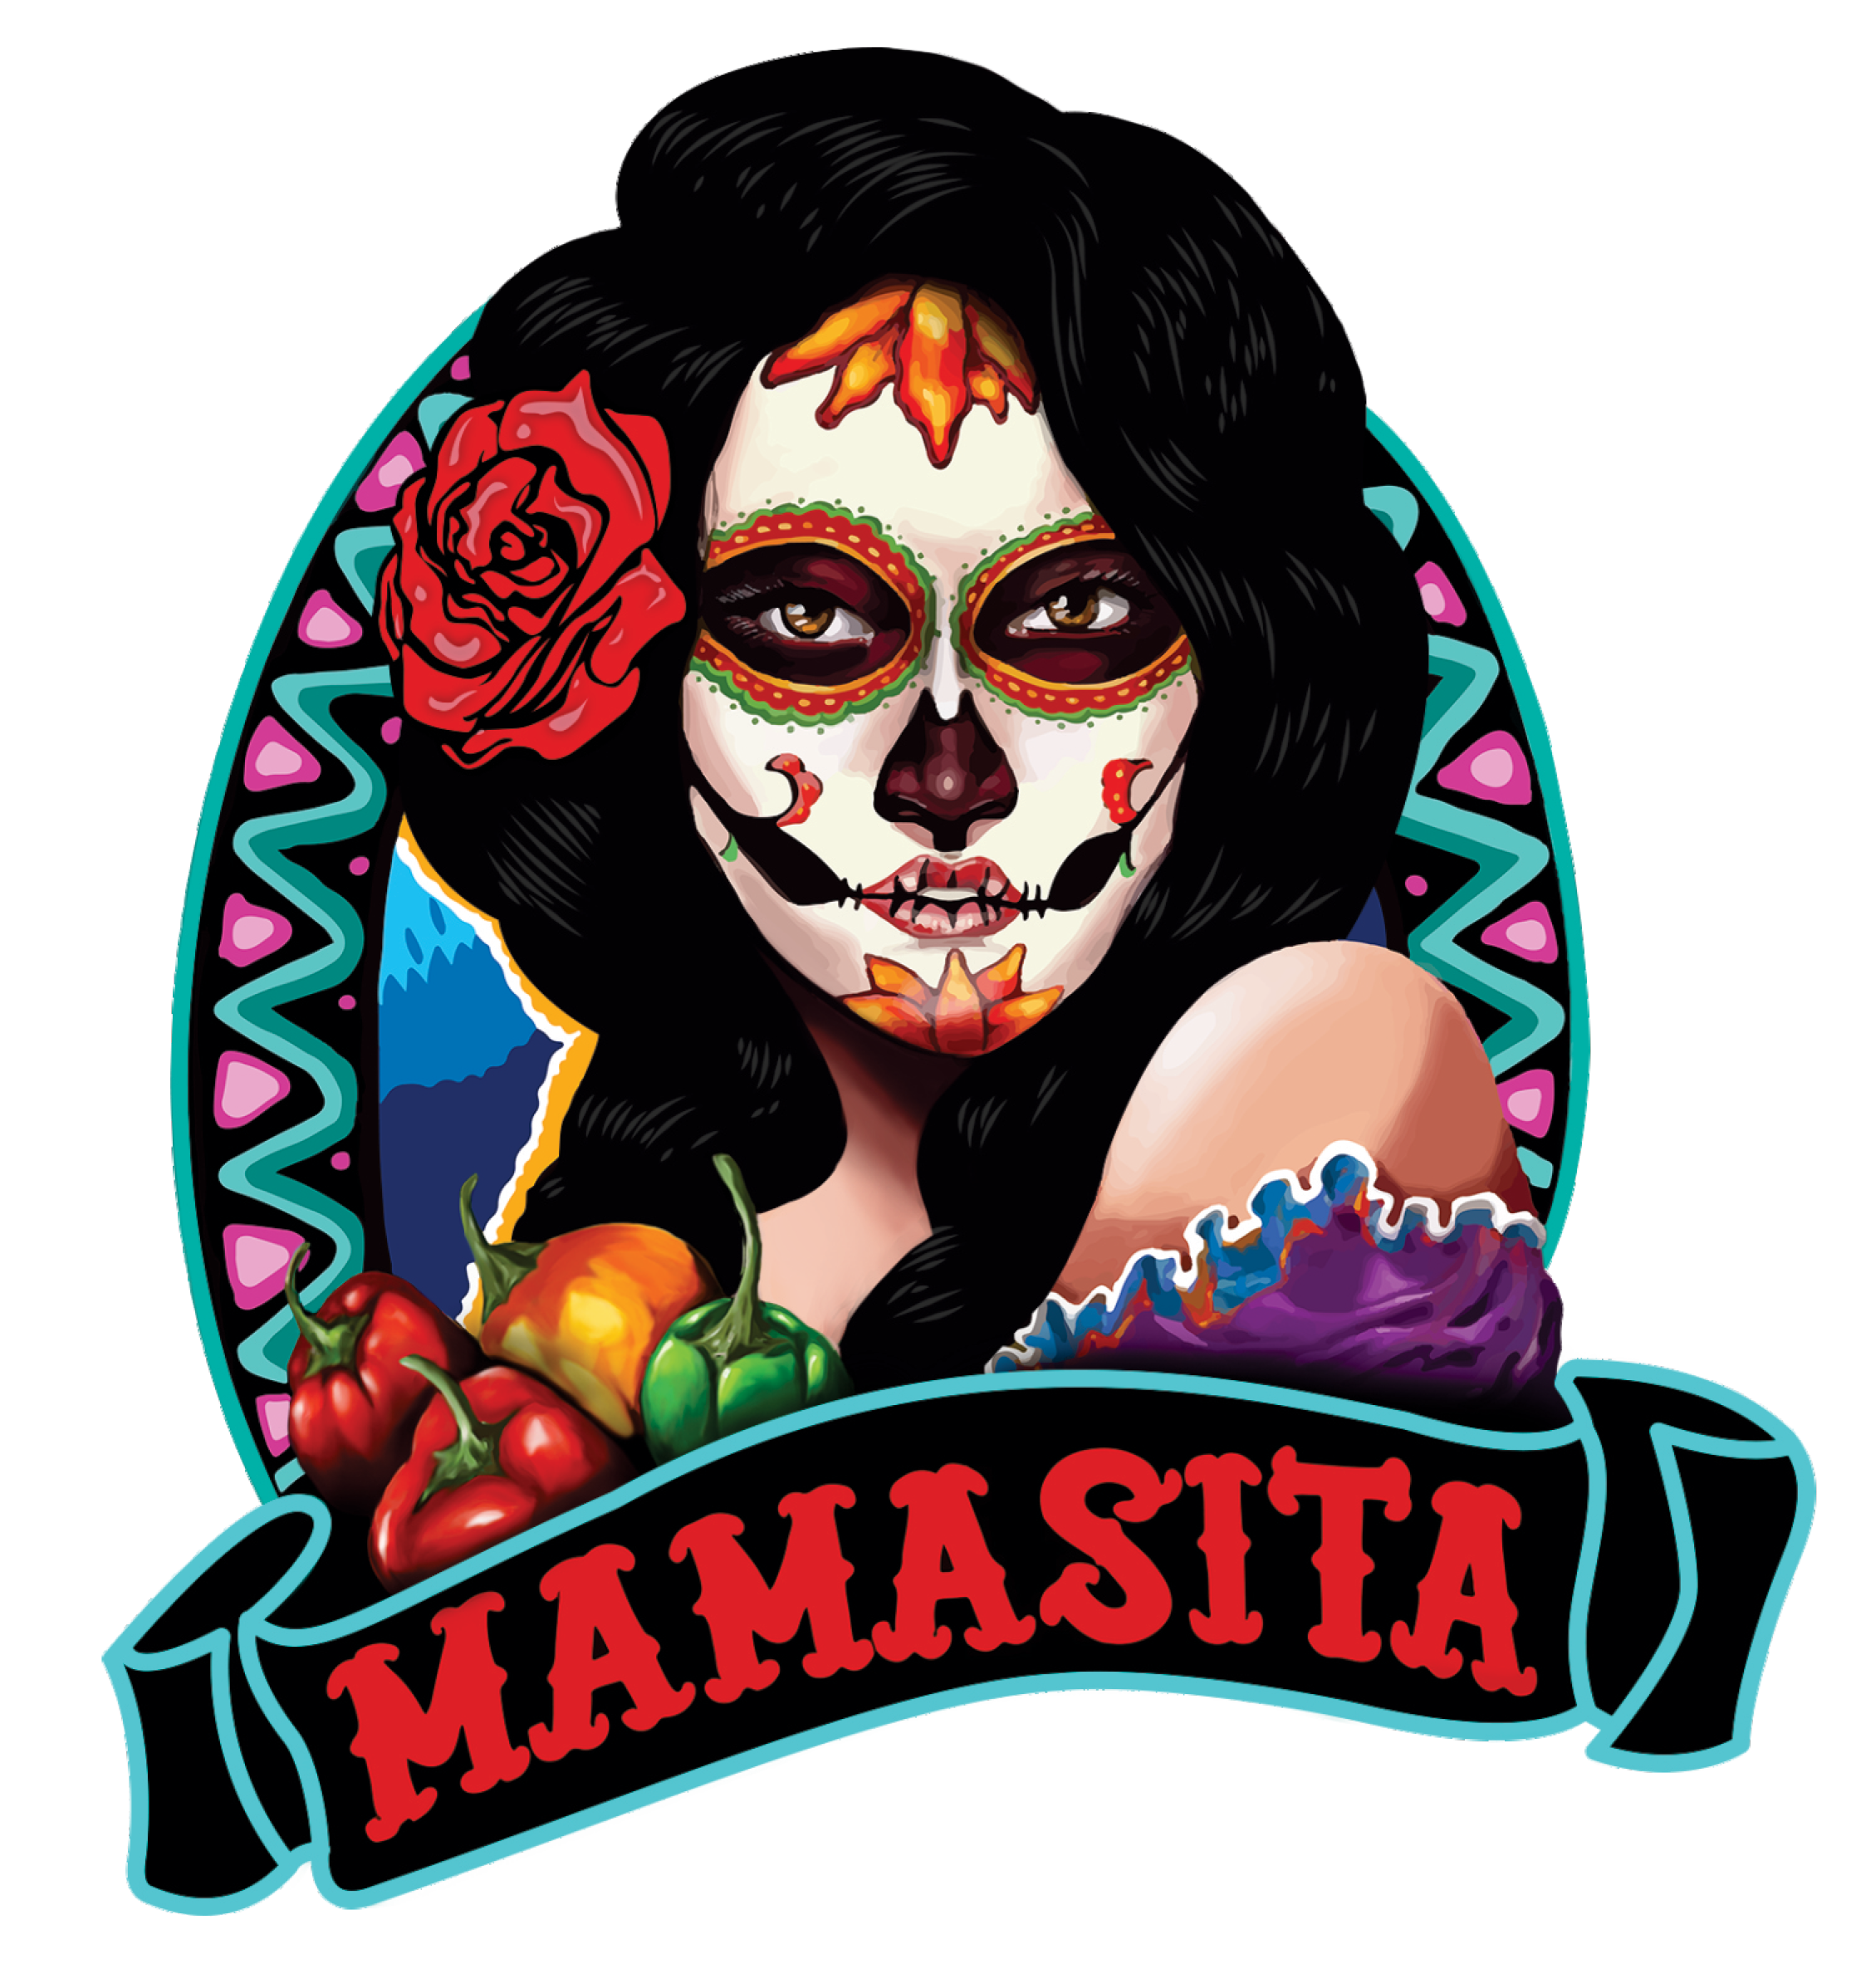 Mamasita Mexican Restaurant and Bar